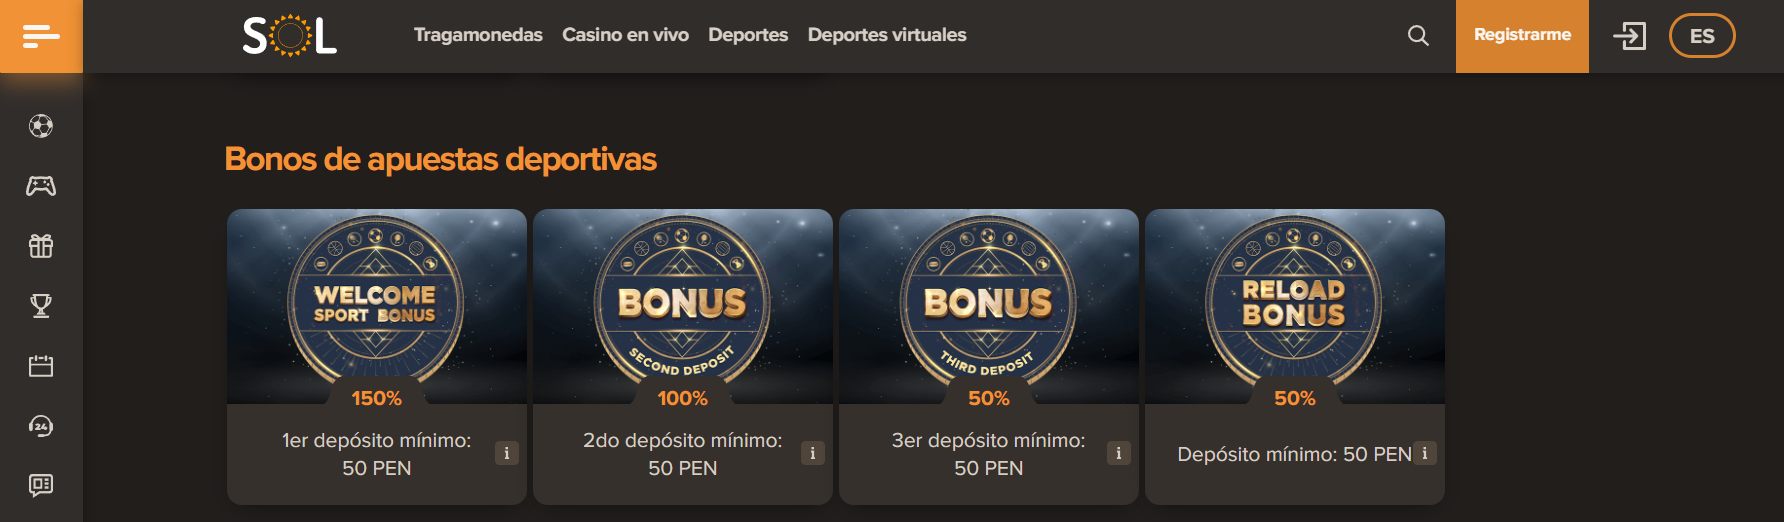 Promociones de Sol casino Perú